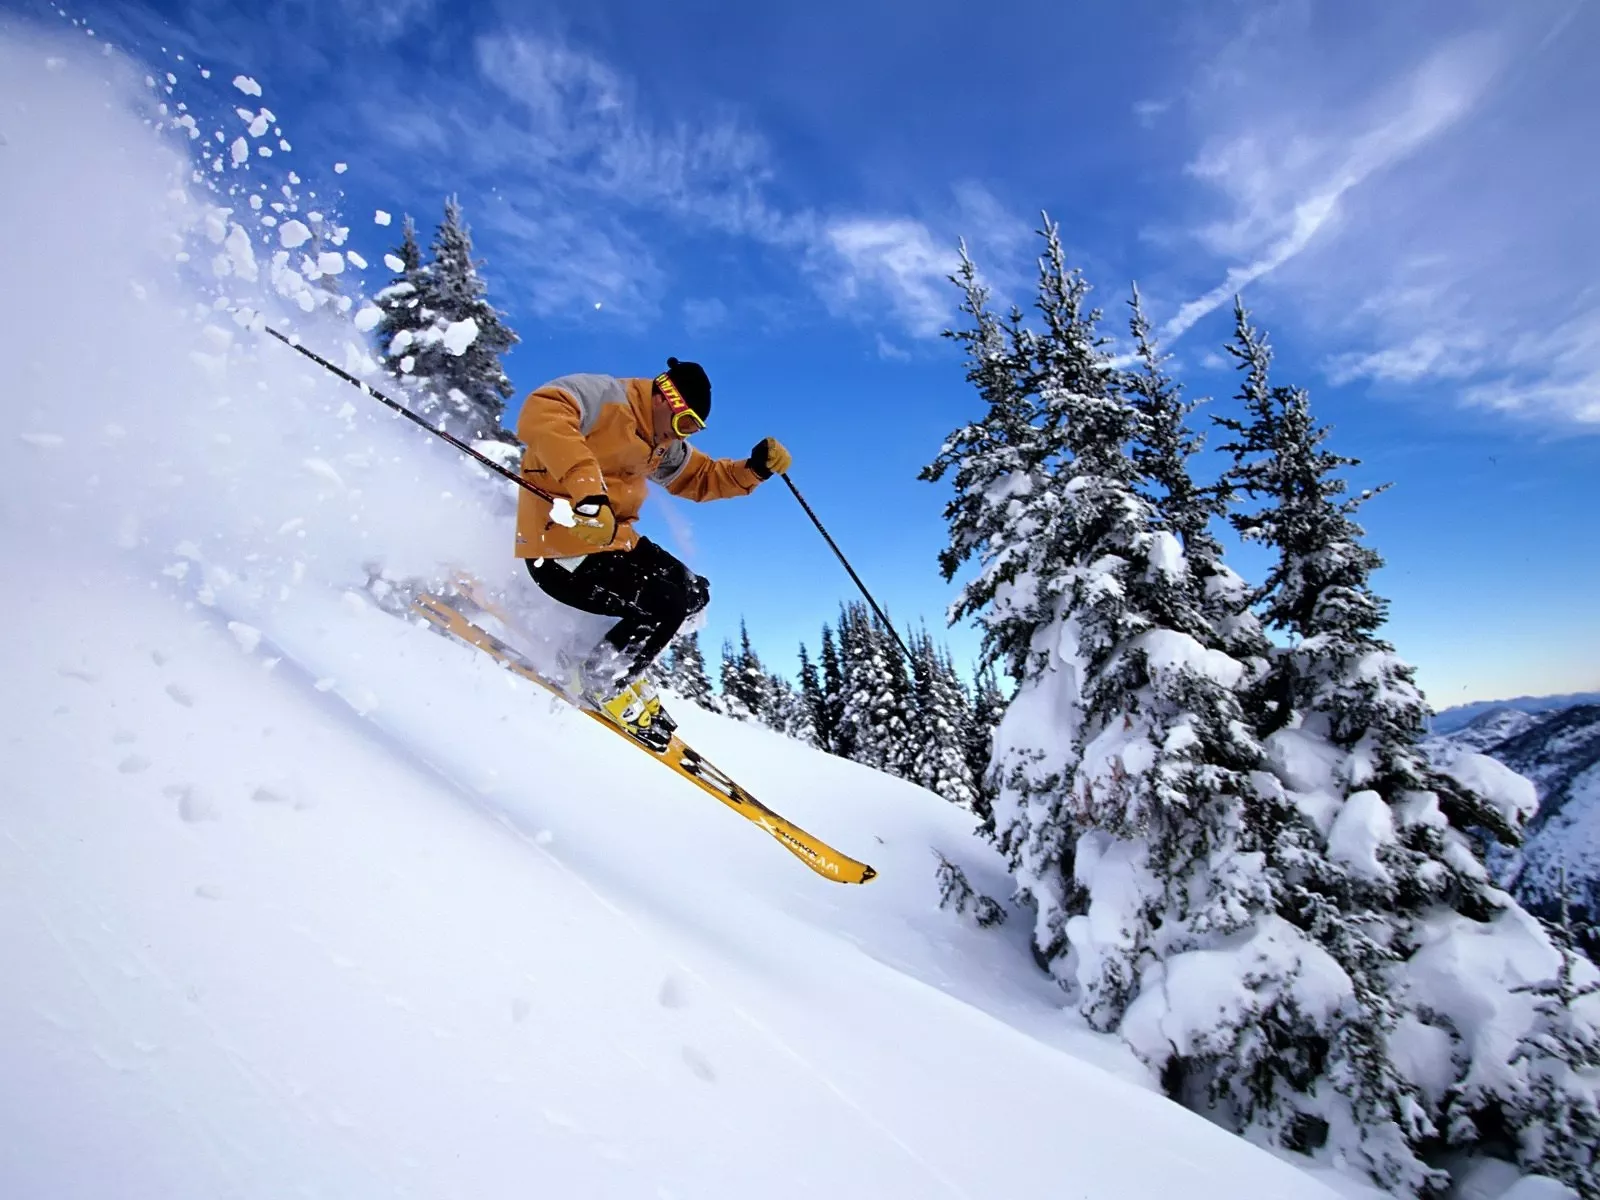 Tikjda Ski Resort in Algeria, Africa | Snowboarding,Skiing - Rated 3.7